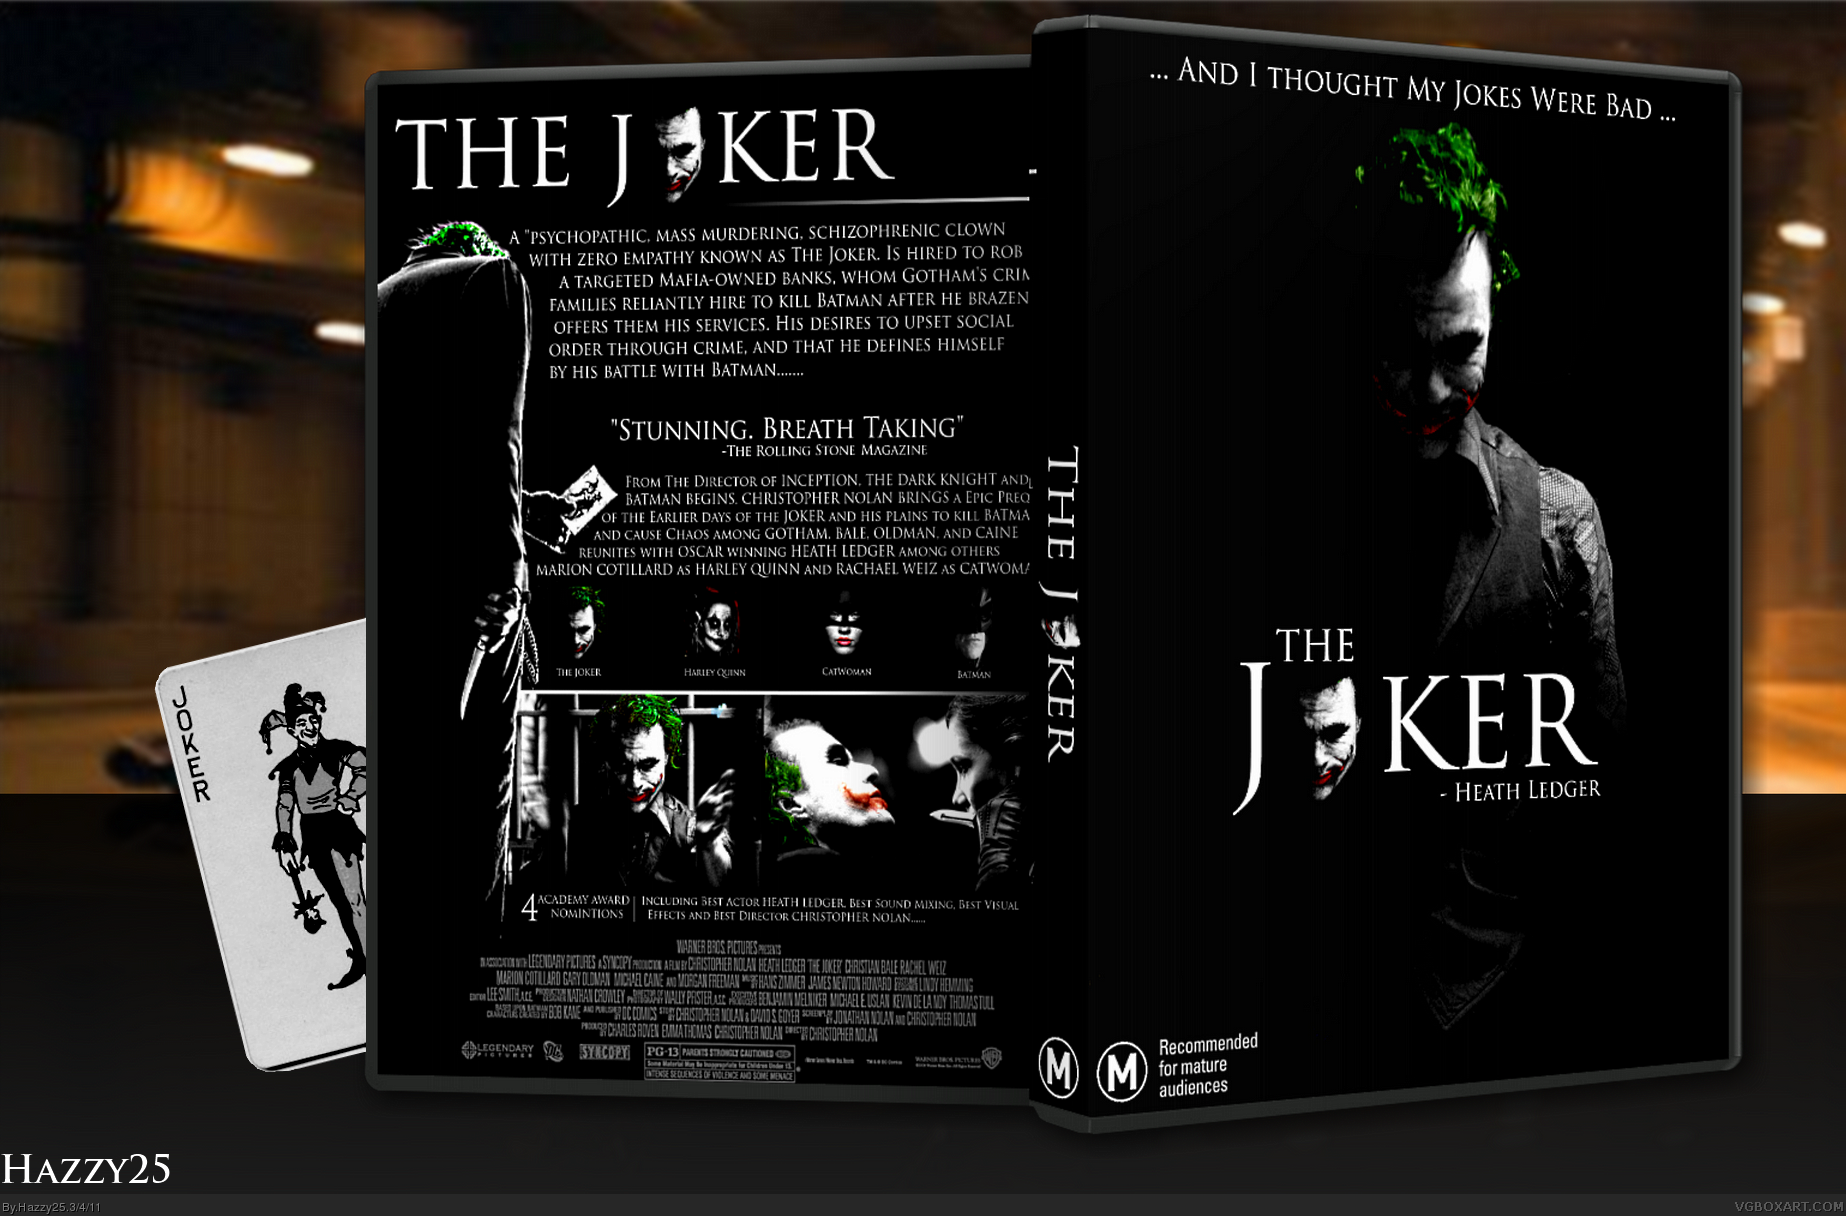 The Joker box cover